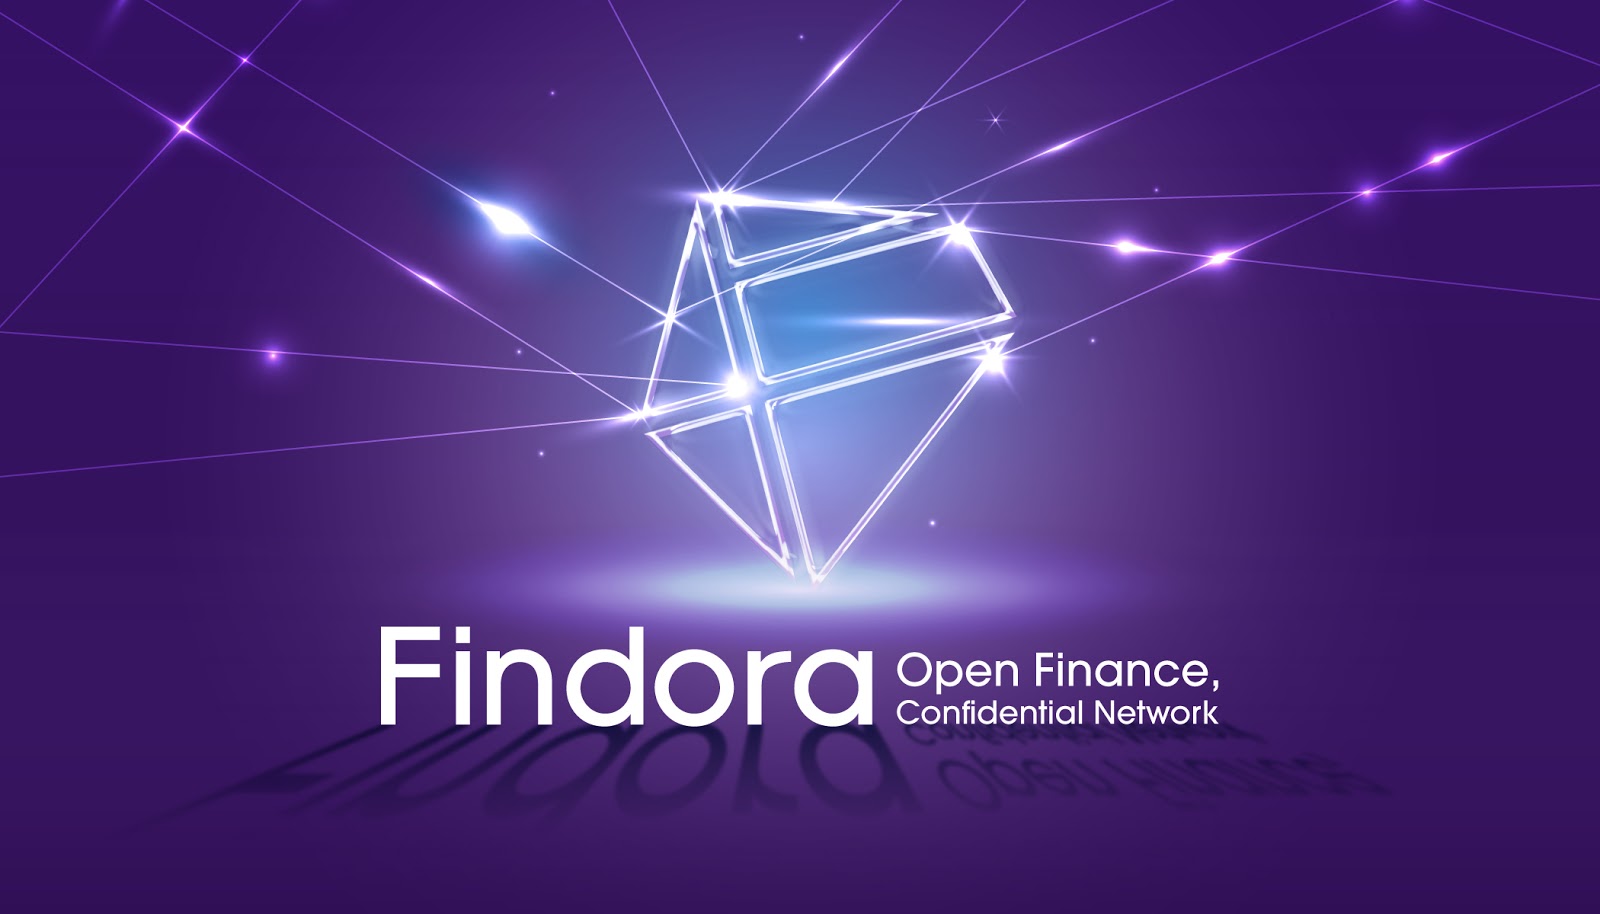 Findora, a confidential open finance platform, announces public sale